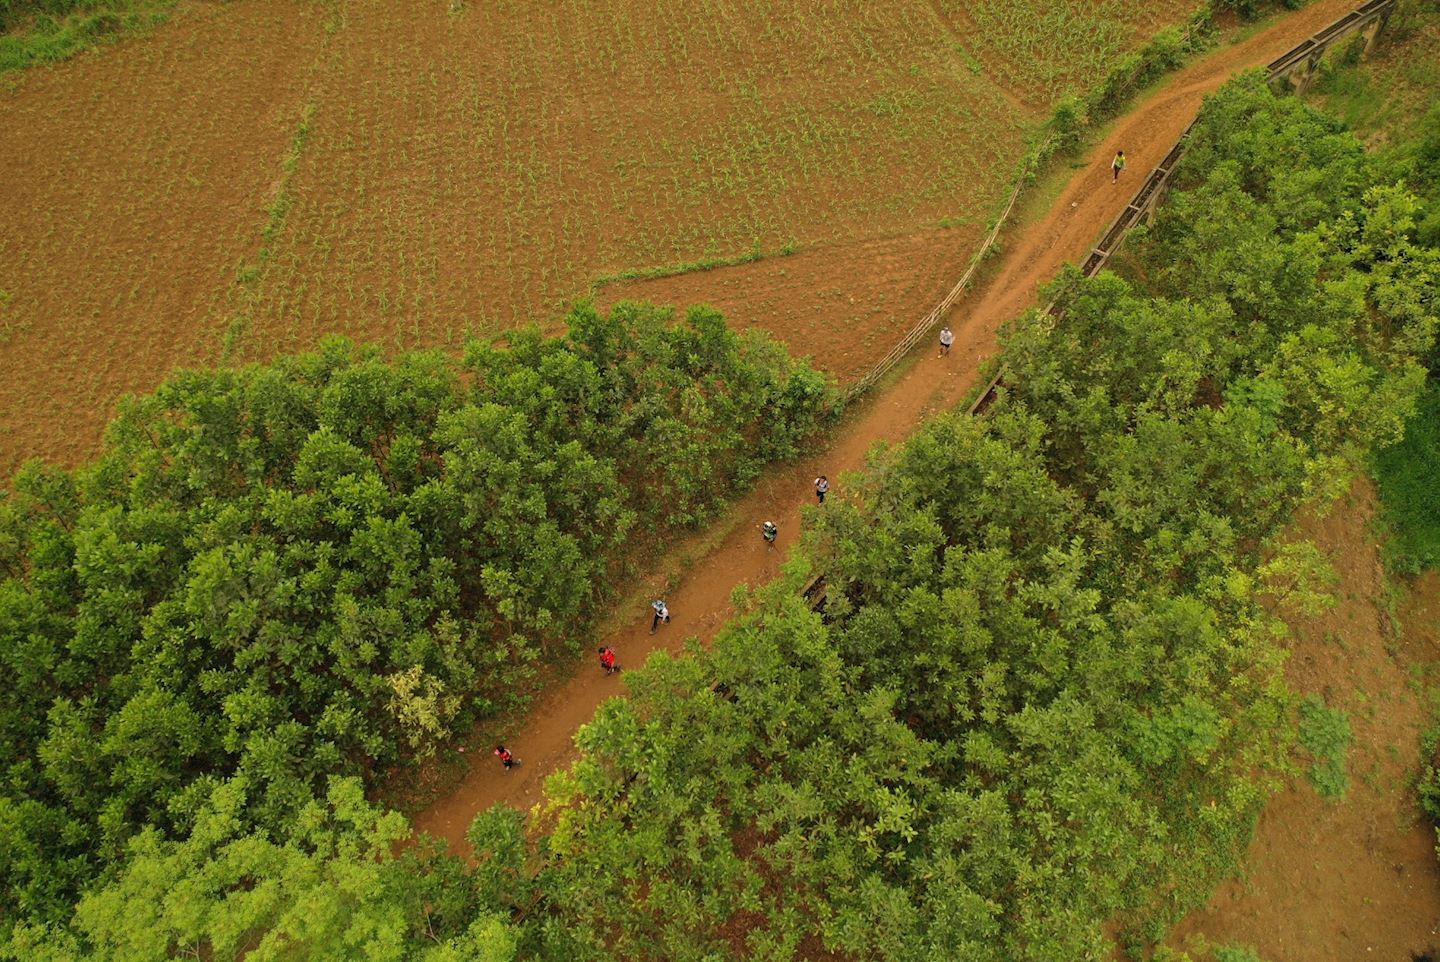 cuc phuong jungle paths